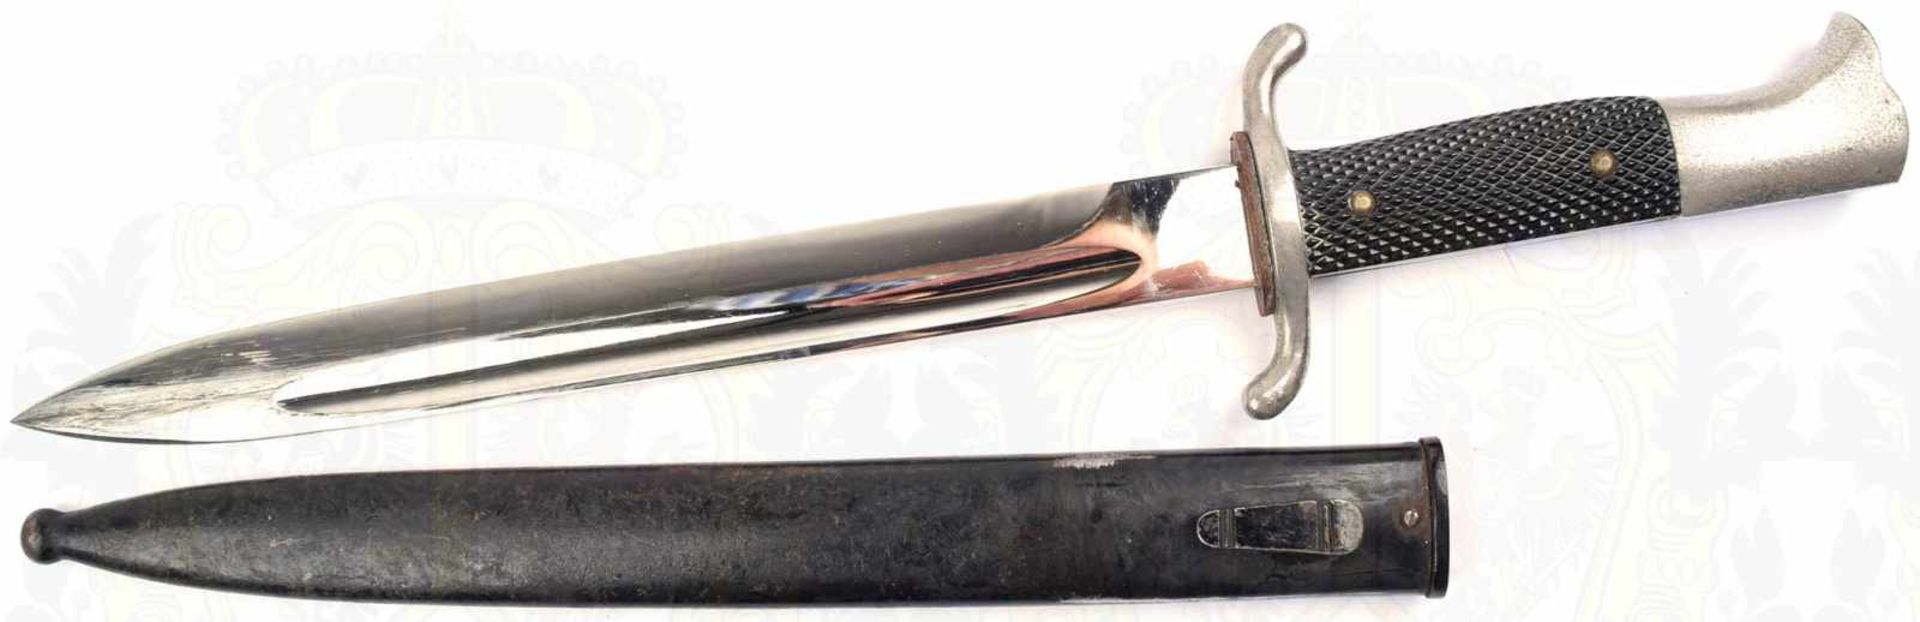 FEUERWEHR-FASCHINENMESSER, vernickelte Klinge, L. 25cm, Stoßleder, vernickelte Griffteile aus